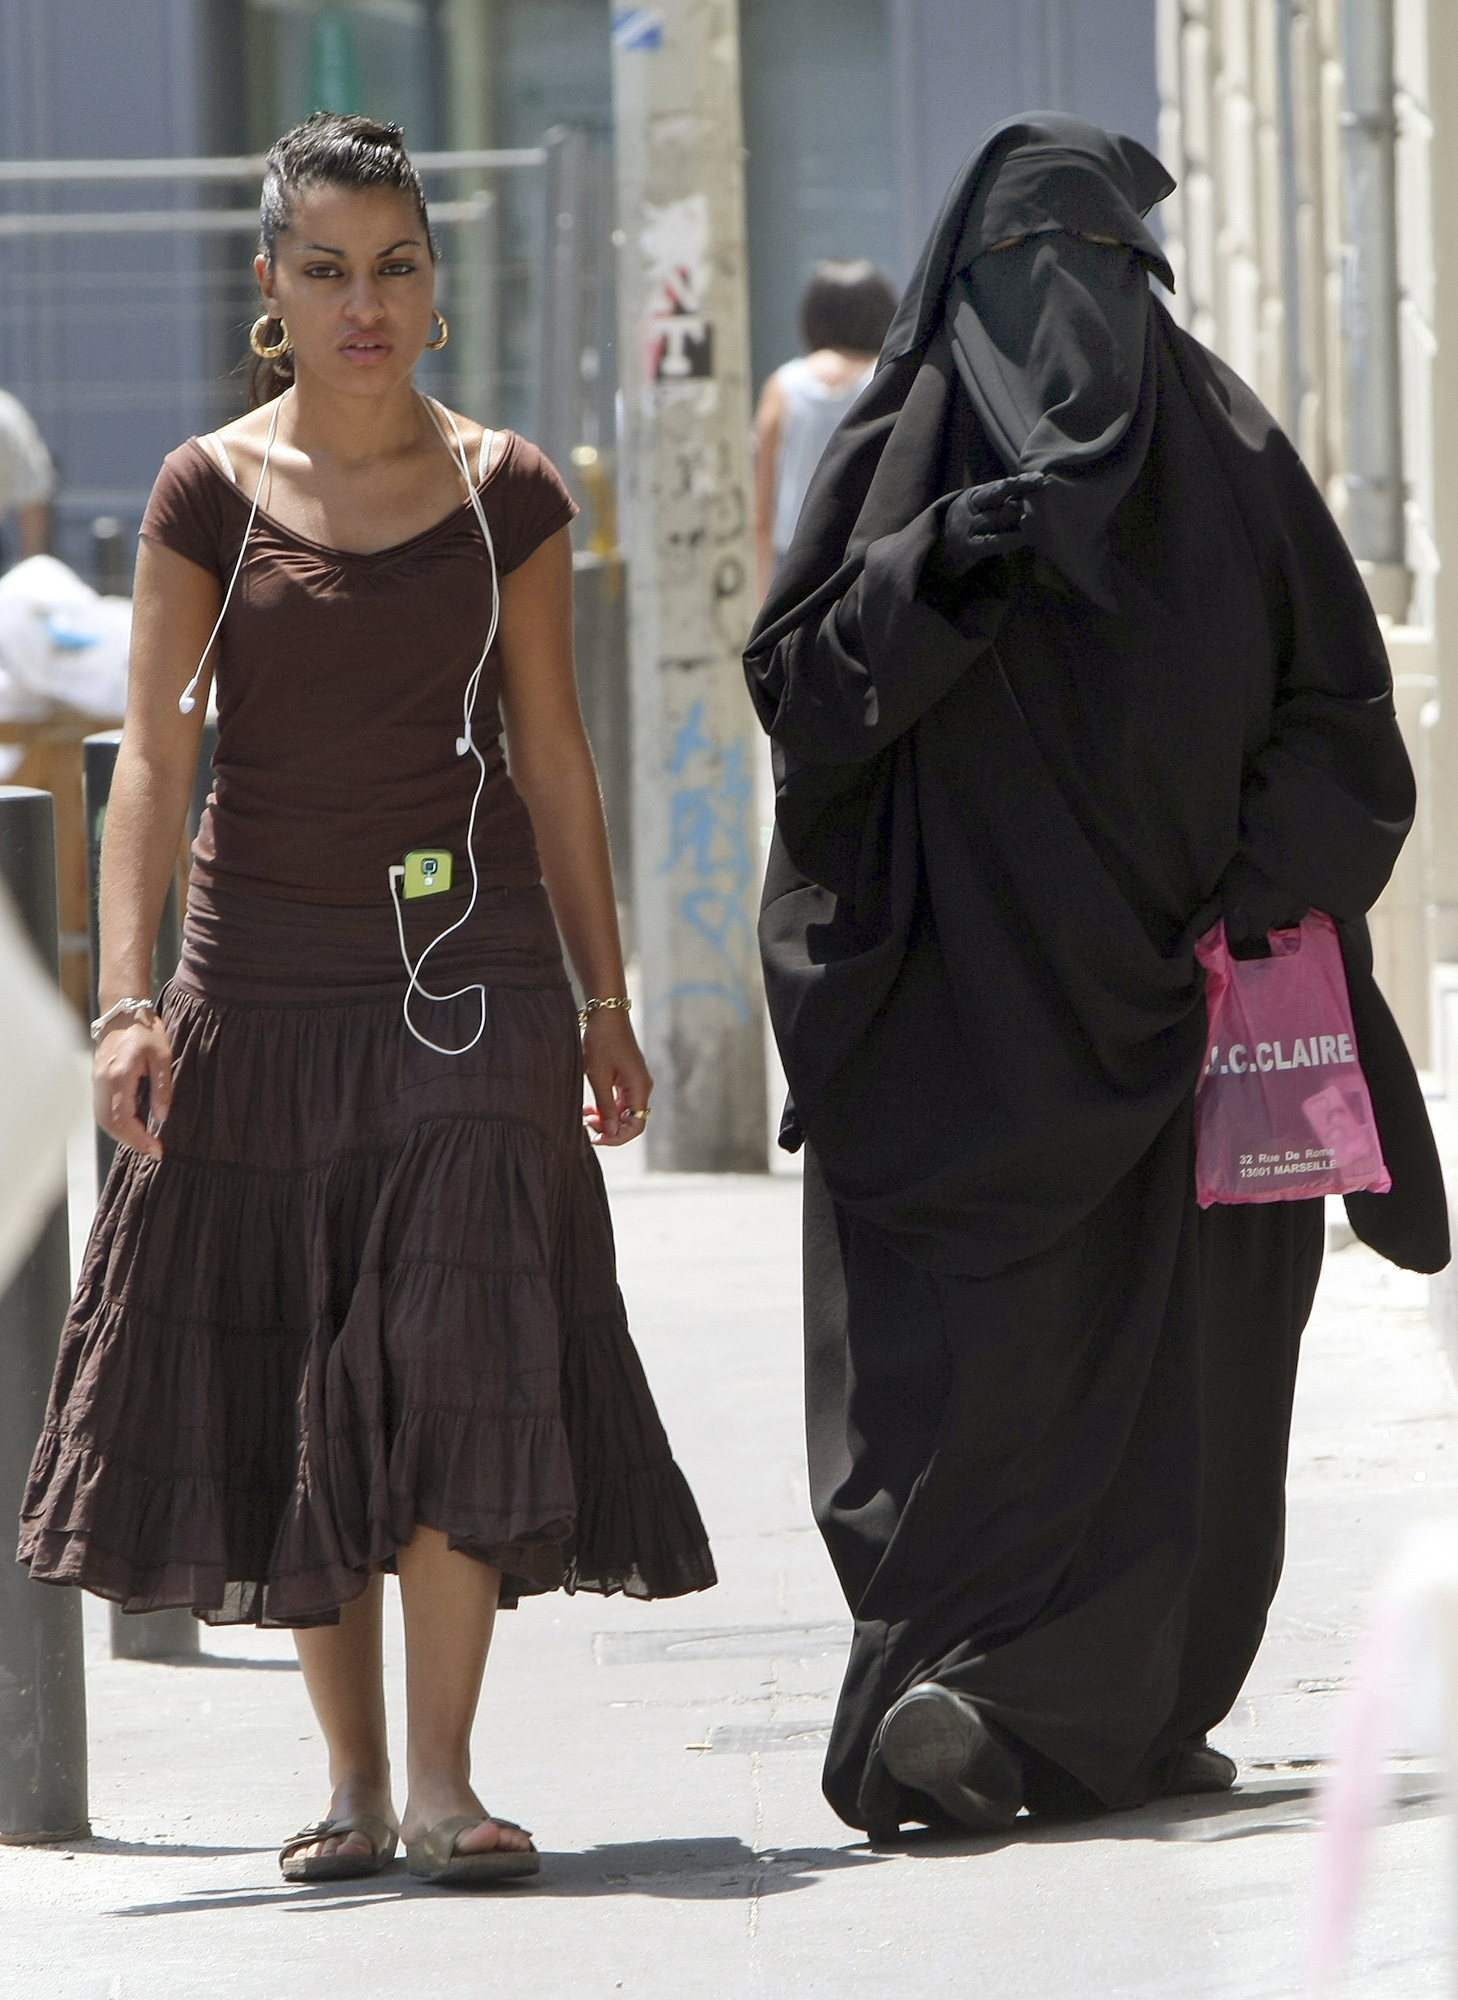 Kvinnan till höger begår brott genom sin klädsel.